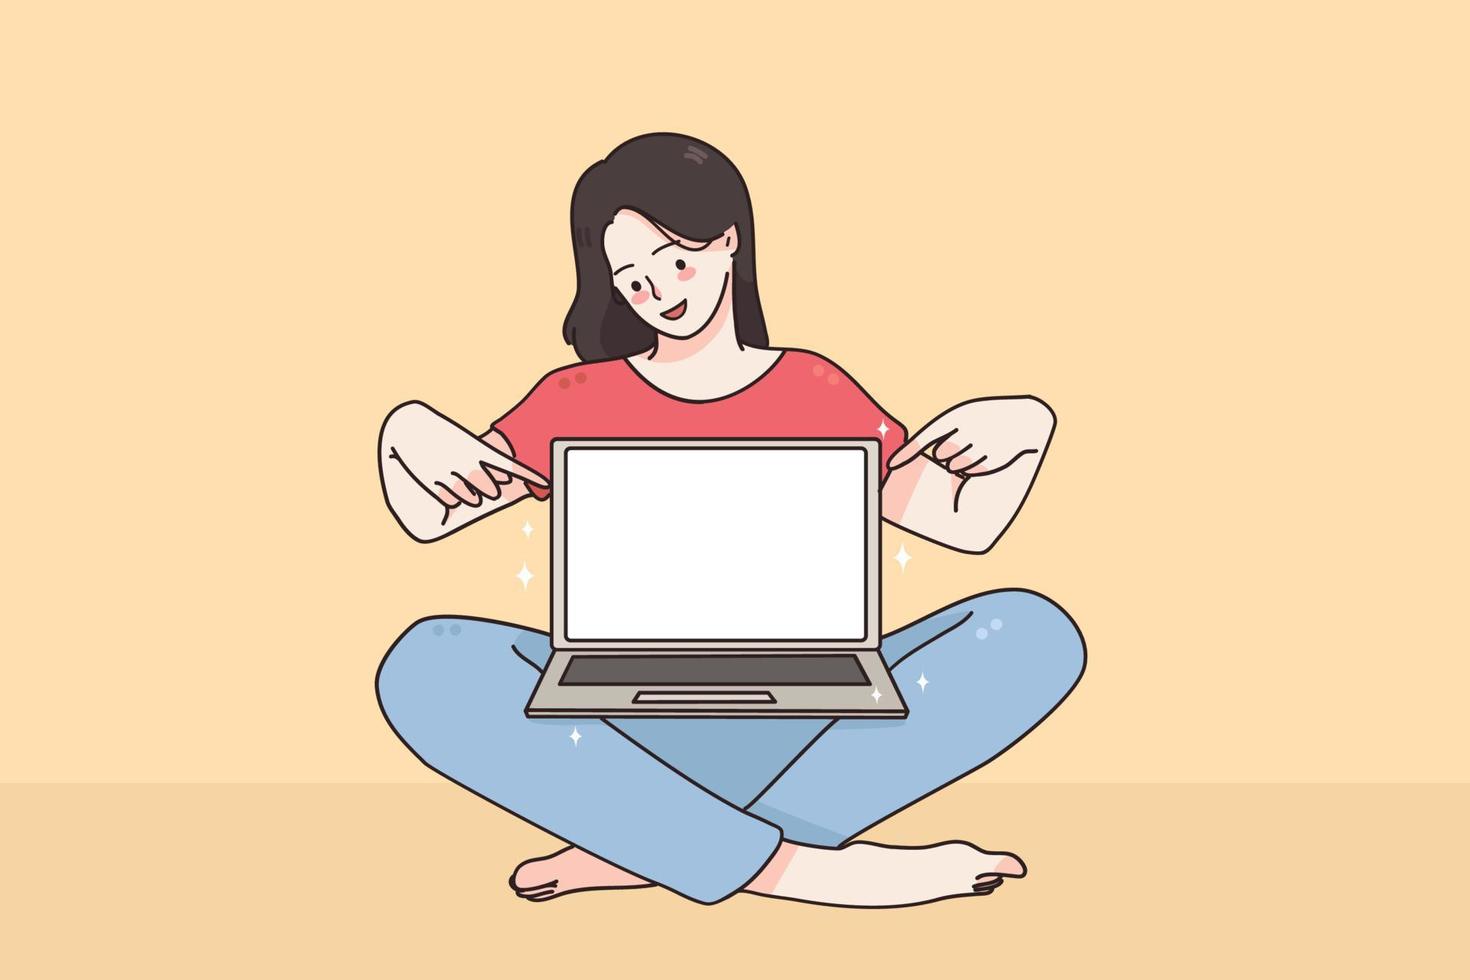 espace de copie, écran, concept technologique. jeune fille souriante personnage de dessin animé assis pointant du doigt l'écran d'un ordinateur portable avec illustration vectorielle d'écran blanc vierge vecteur